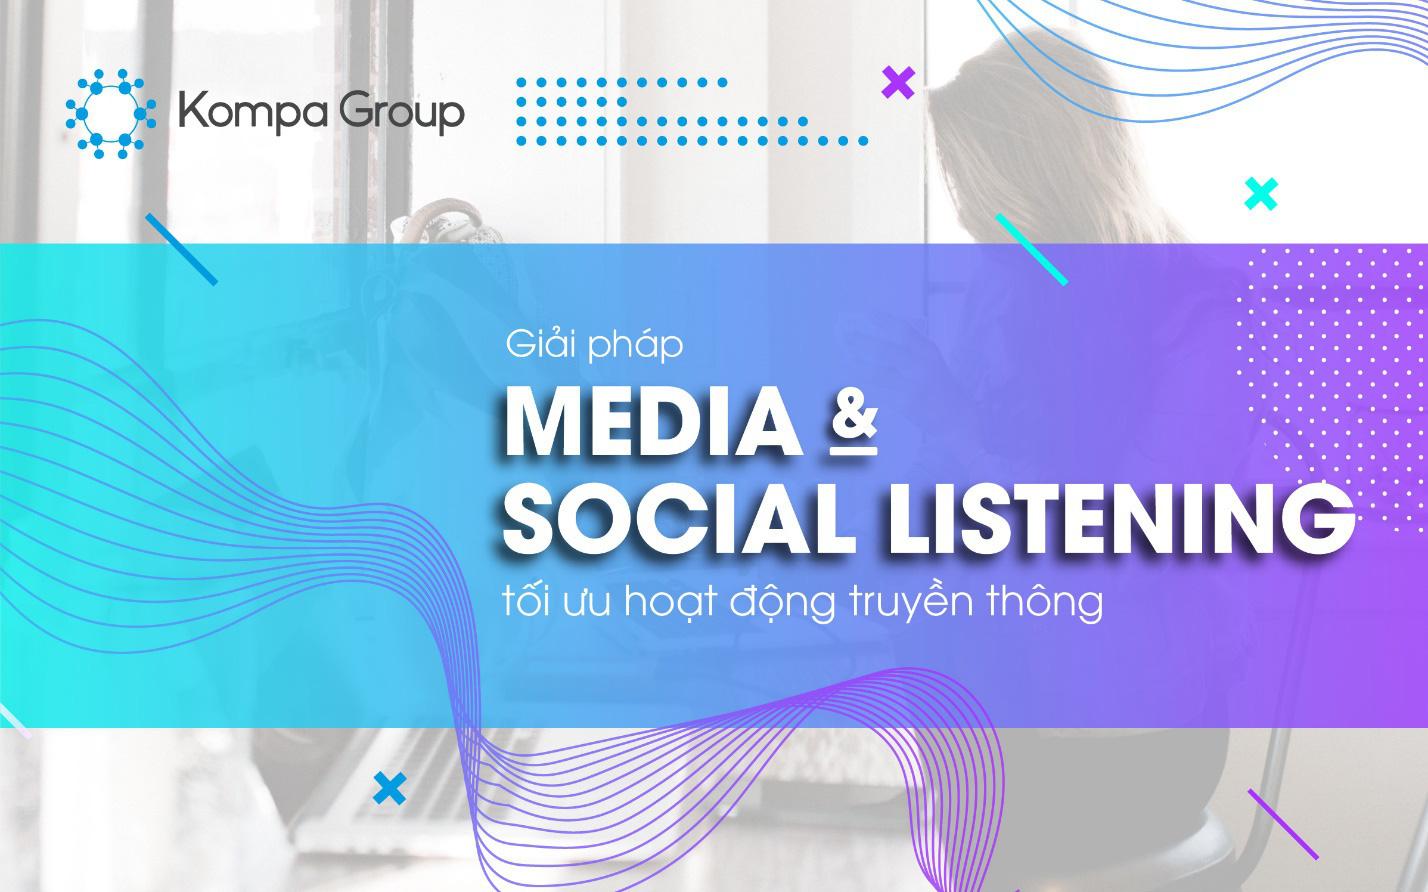 Giải pháp "Media & Social Listening" của Kompa Group: Tối ưu hóa chiến lược Truyền thông và Marketing